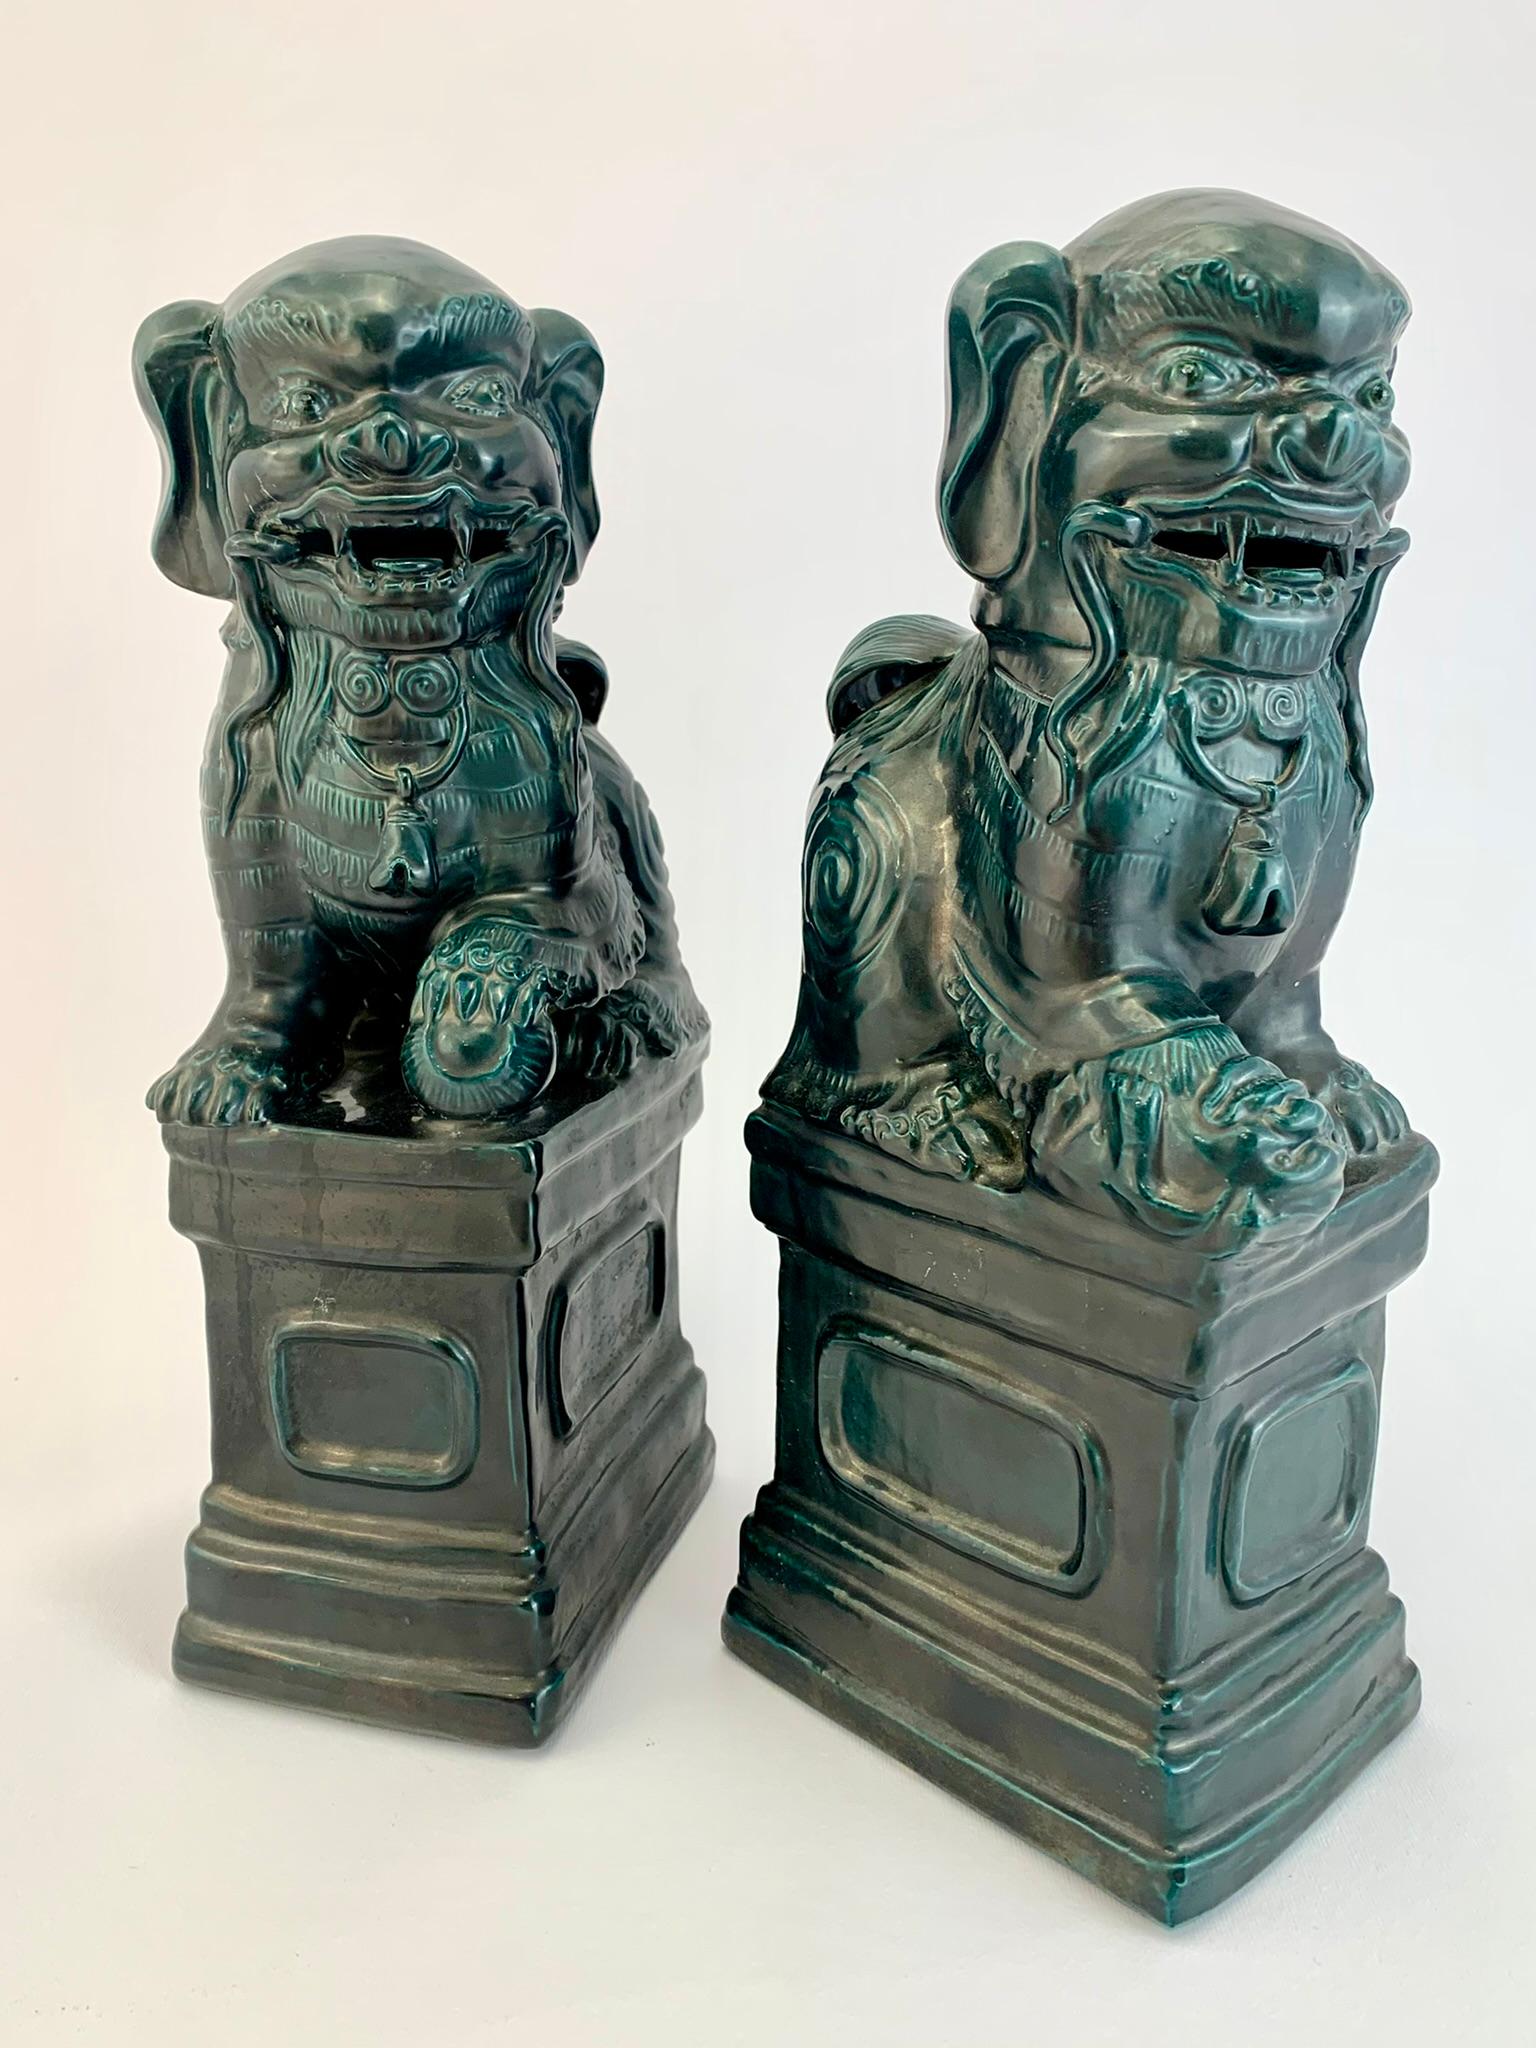 Schönes Paar Pho-Hunde aus türkis glasierter Keramik, auf Sockel.
Orientalische Manufaktur aus der ersten Hälfte des 20. Jahrhunderts.